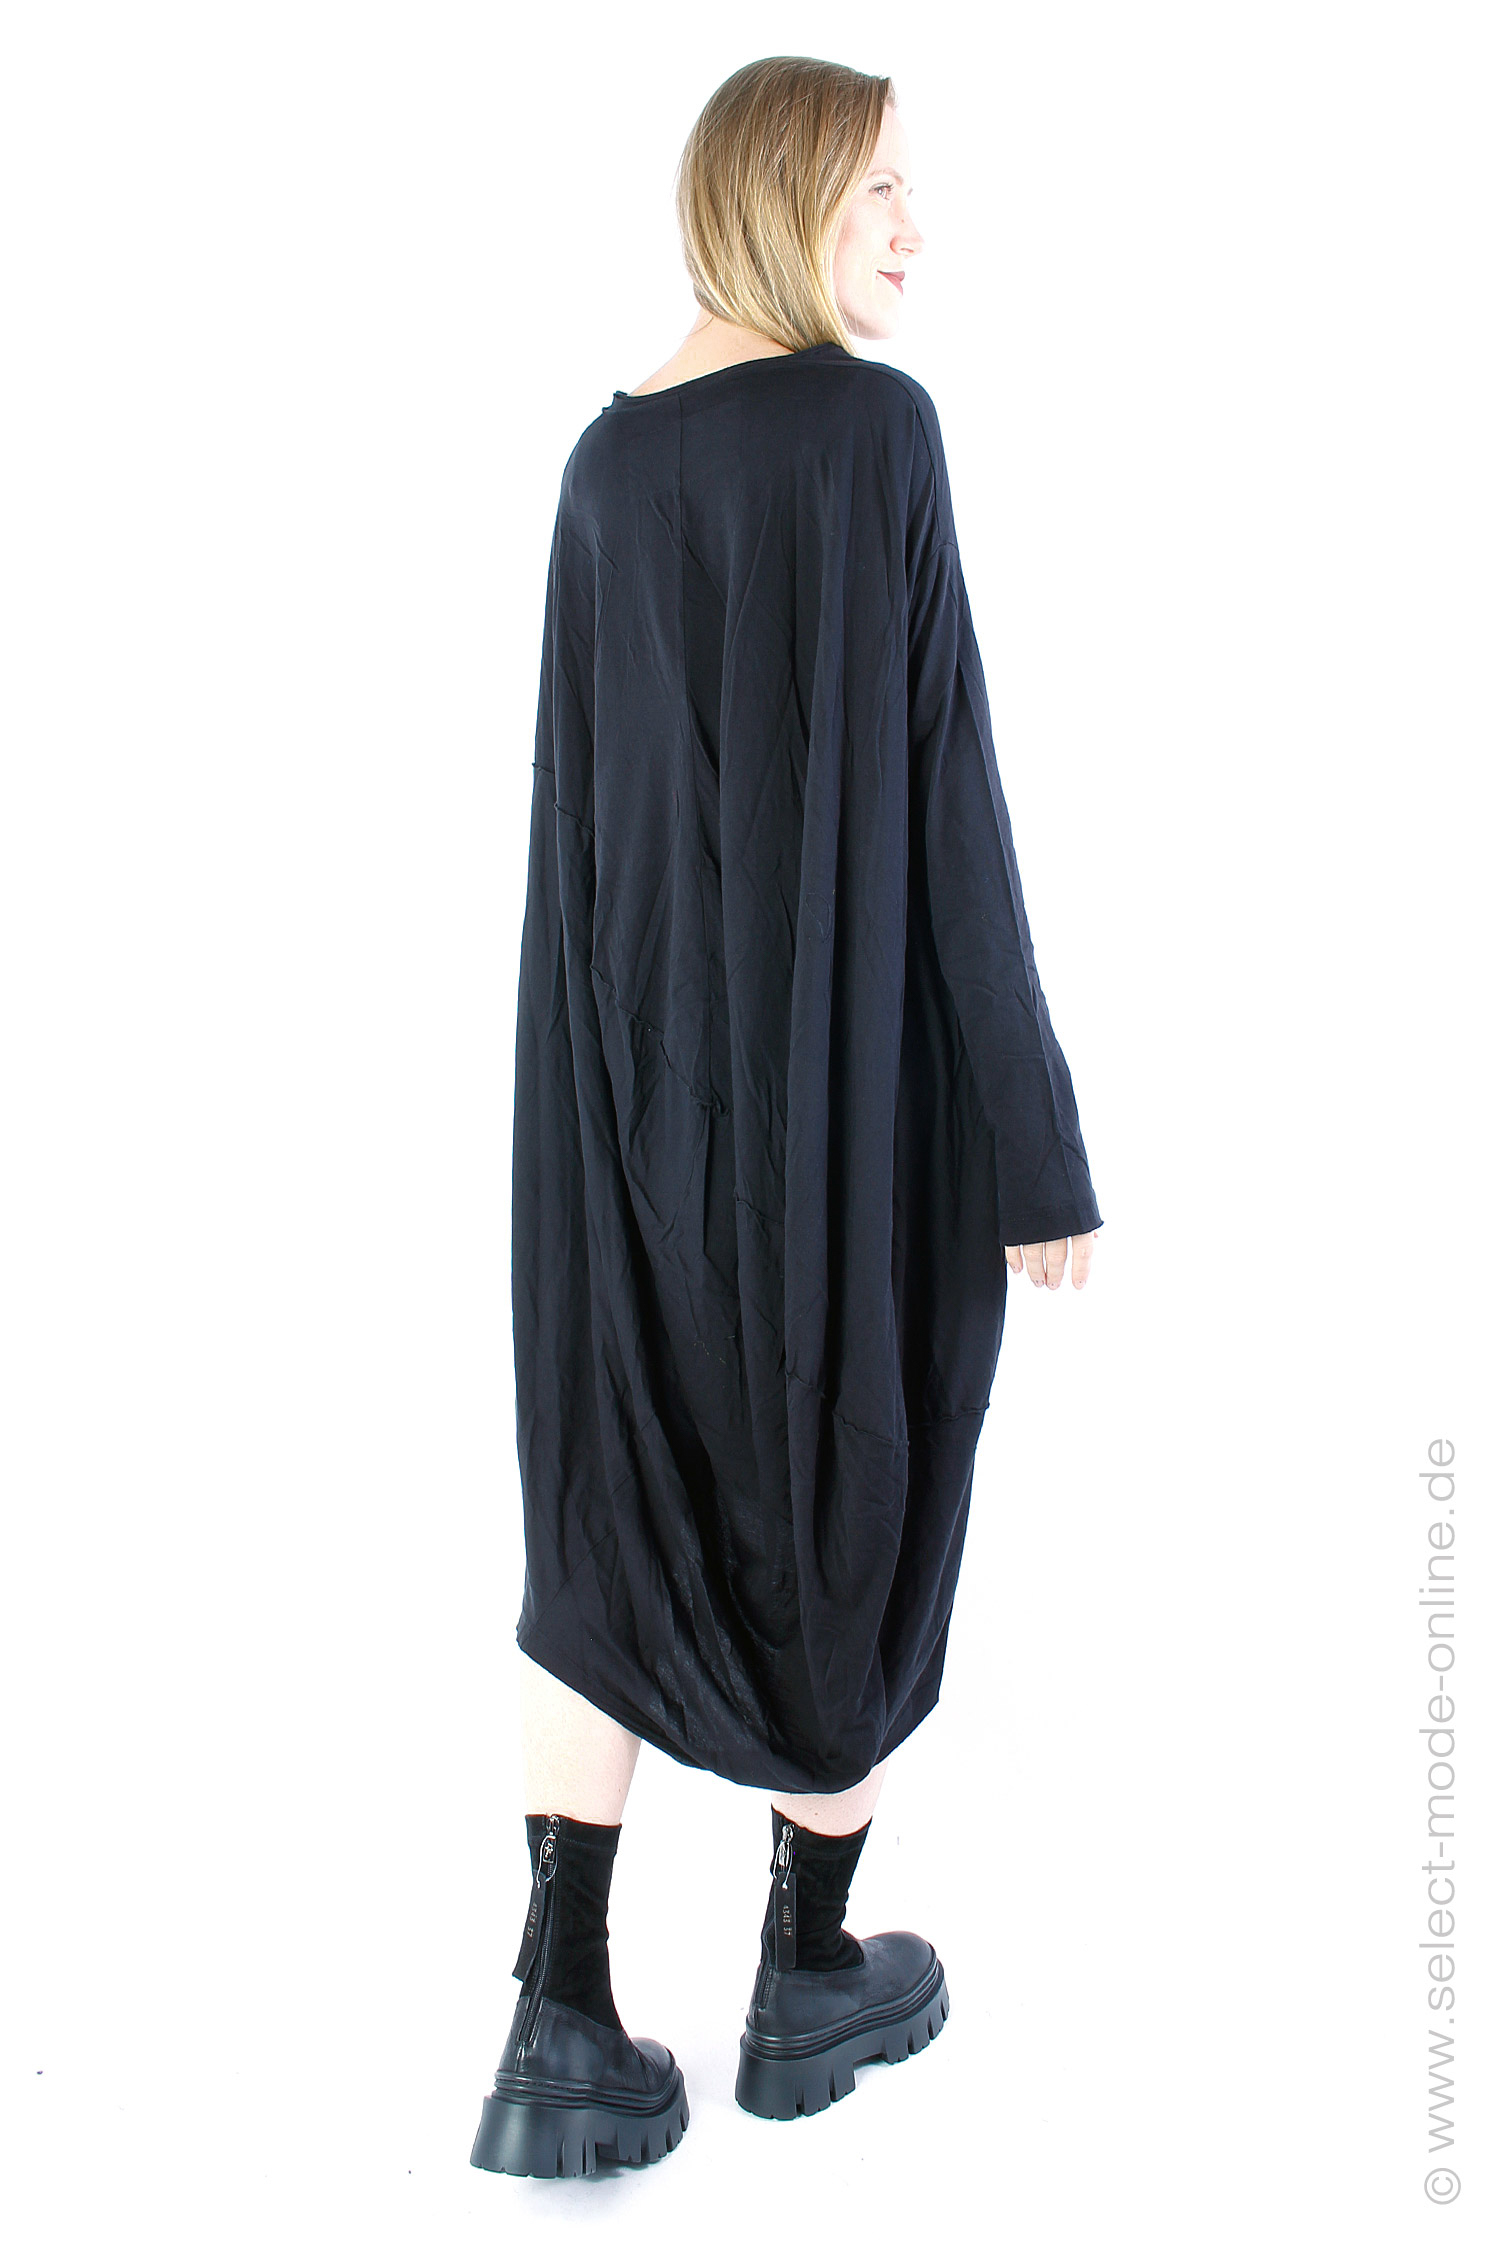 Tulpiges Kleid - schwarz - 2233370936